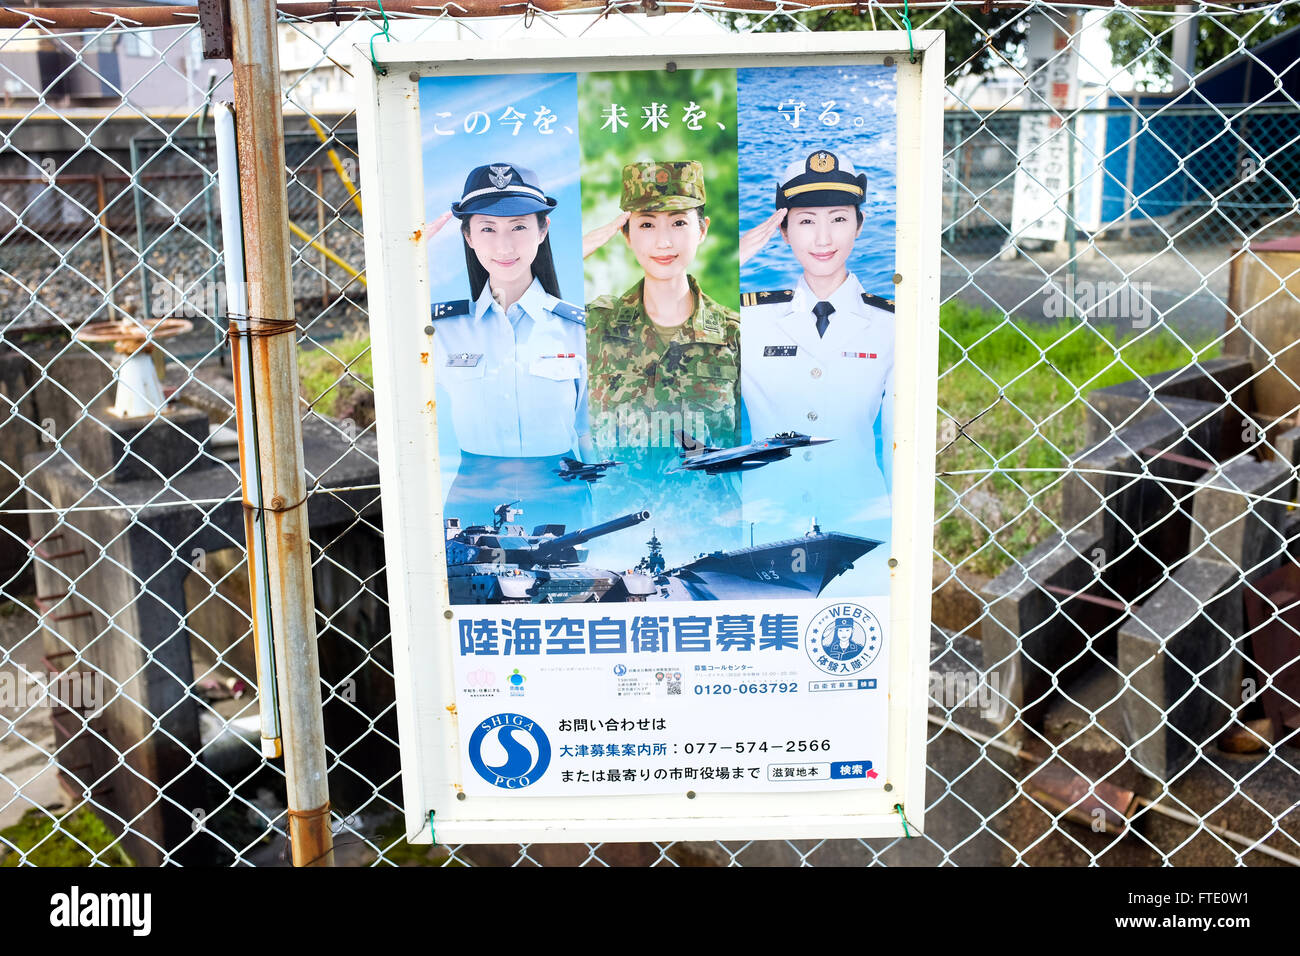 Une affiche de recrutement en encourageant les femmes à se joindre à la Force d'autodéfense japonaises (SDF). Banque D'Images